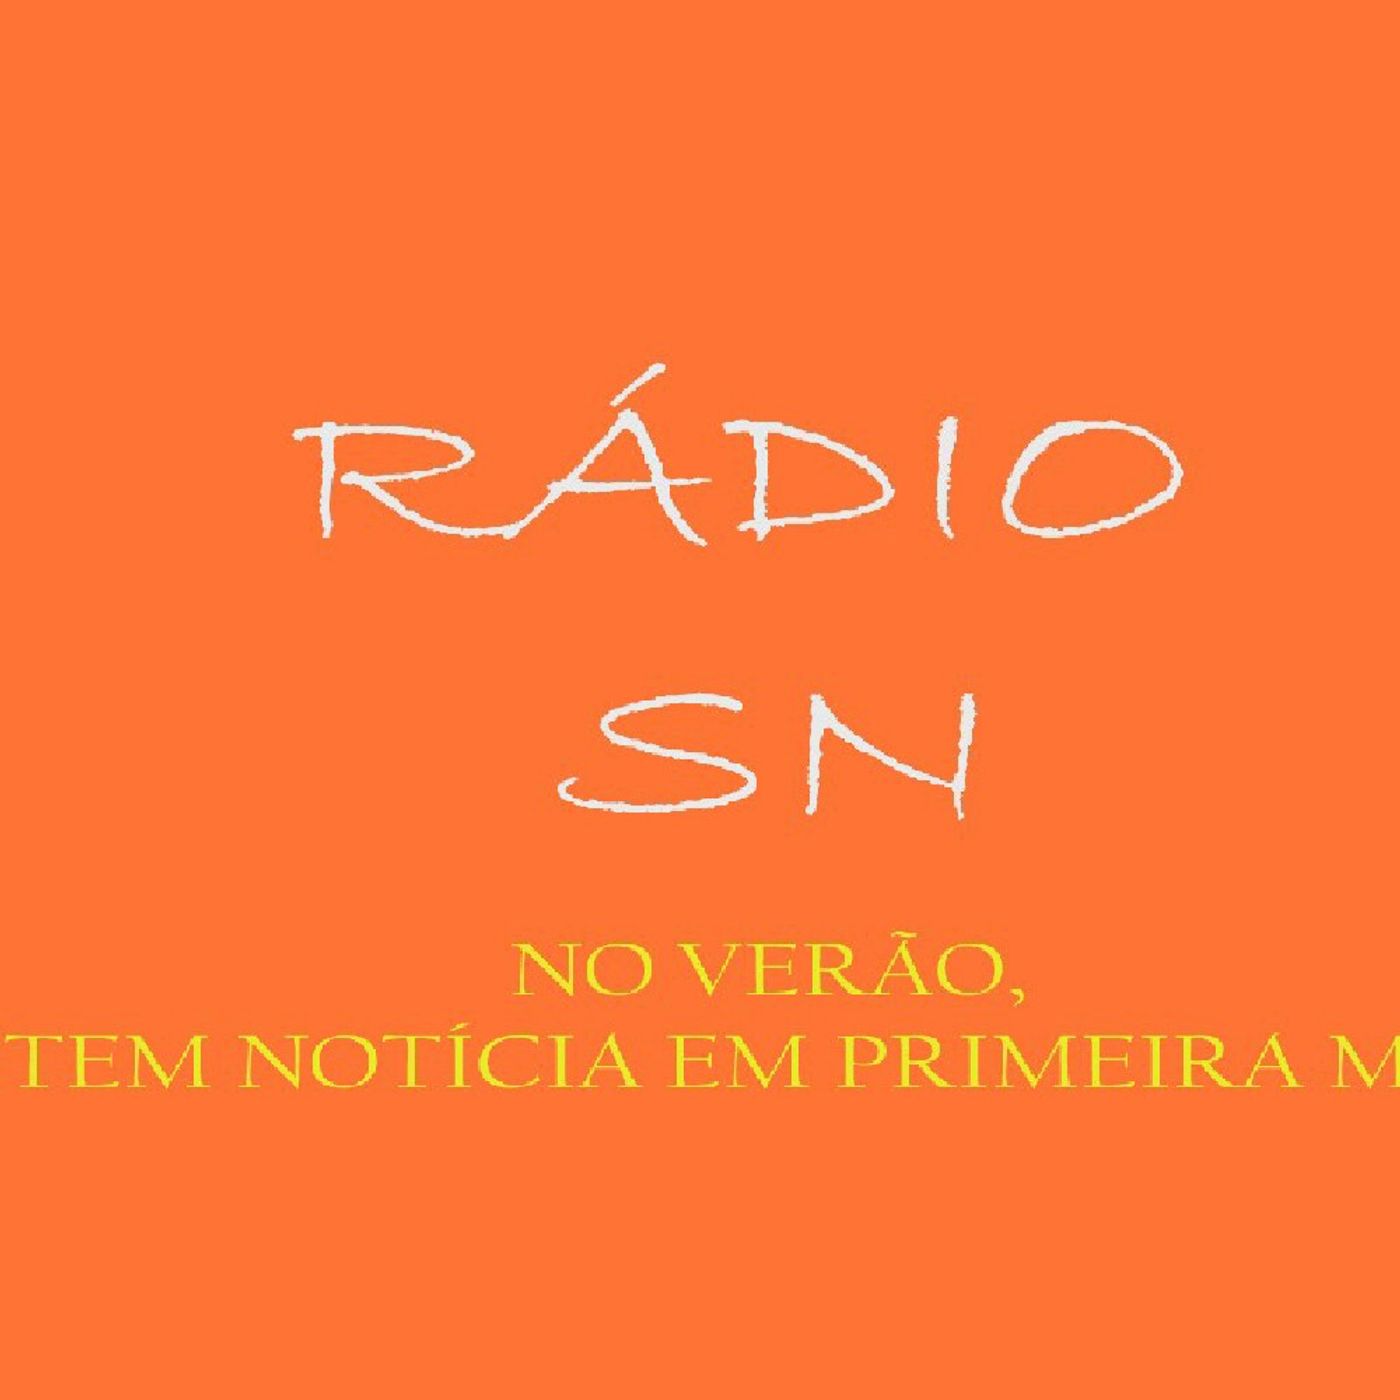 Radio SN